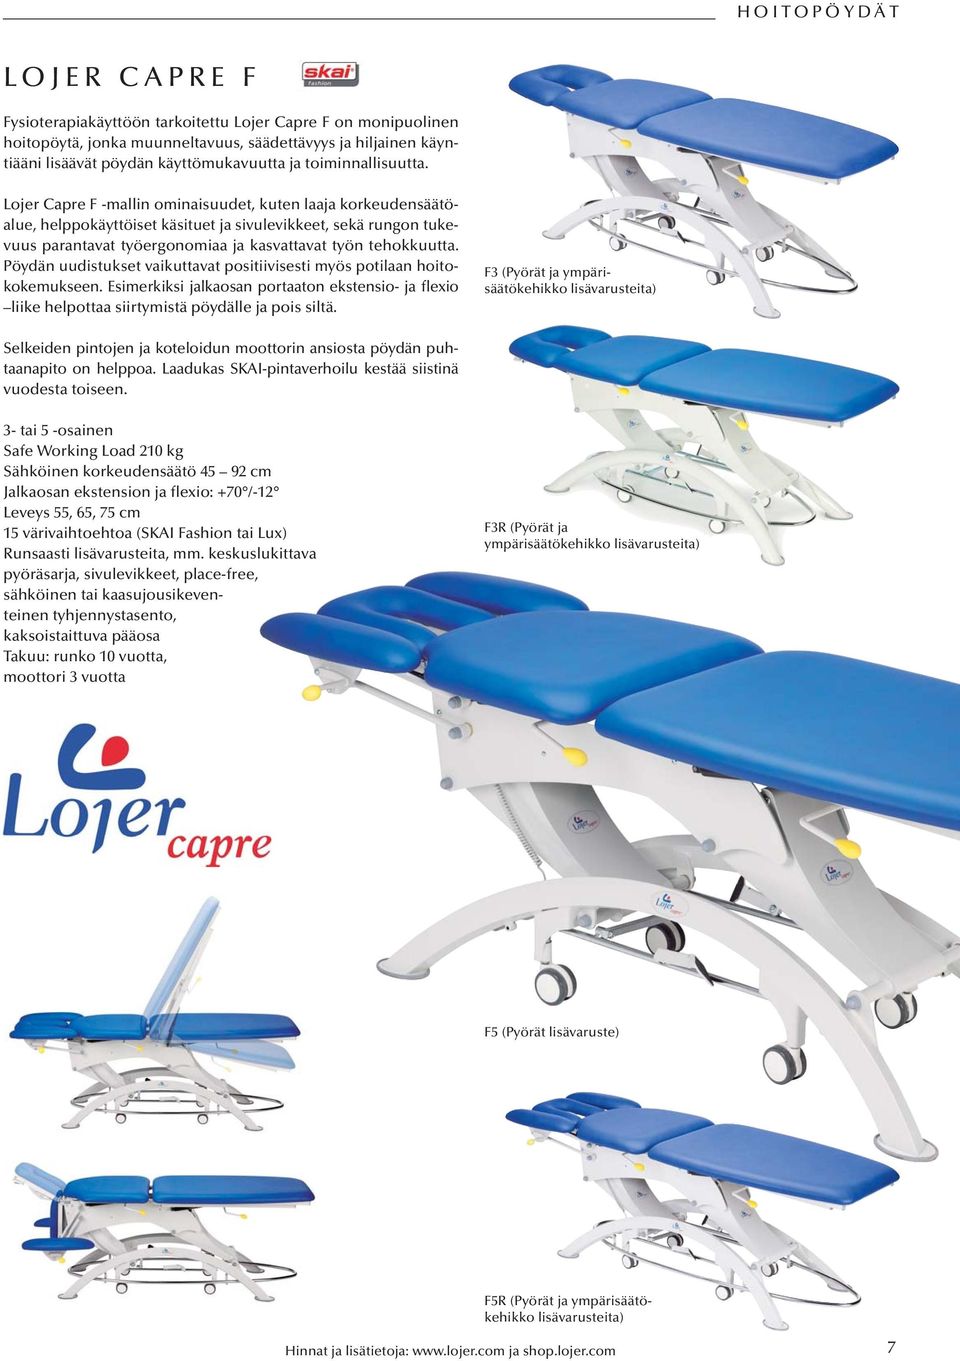 Lojer Capre F -mallin ominaisuudet, kuten laaja korkeudensäätöalue, helppokäyttöiset käsituet ja sivulevikkeet, sekä rungon tukevuus parantavat työergonomiaa ja kasvattavat työn tehokkuutta.